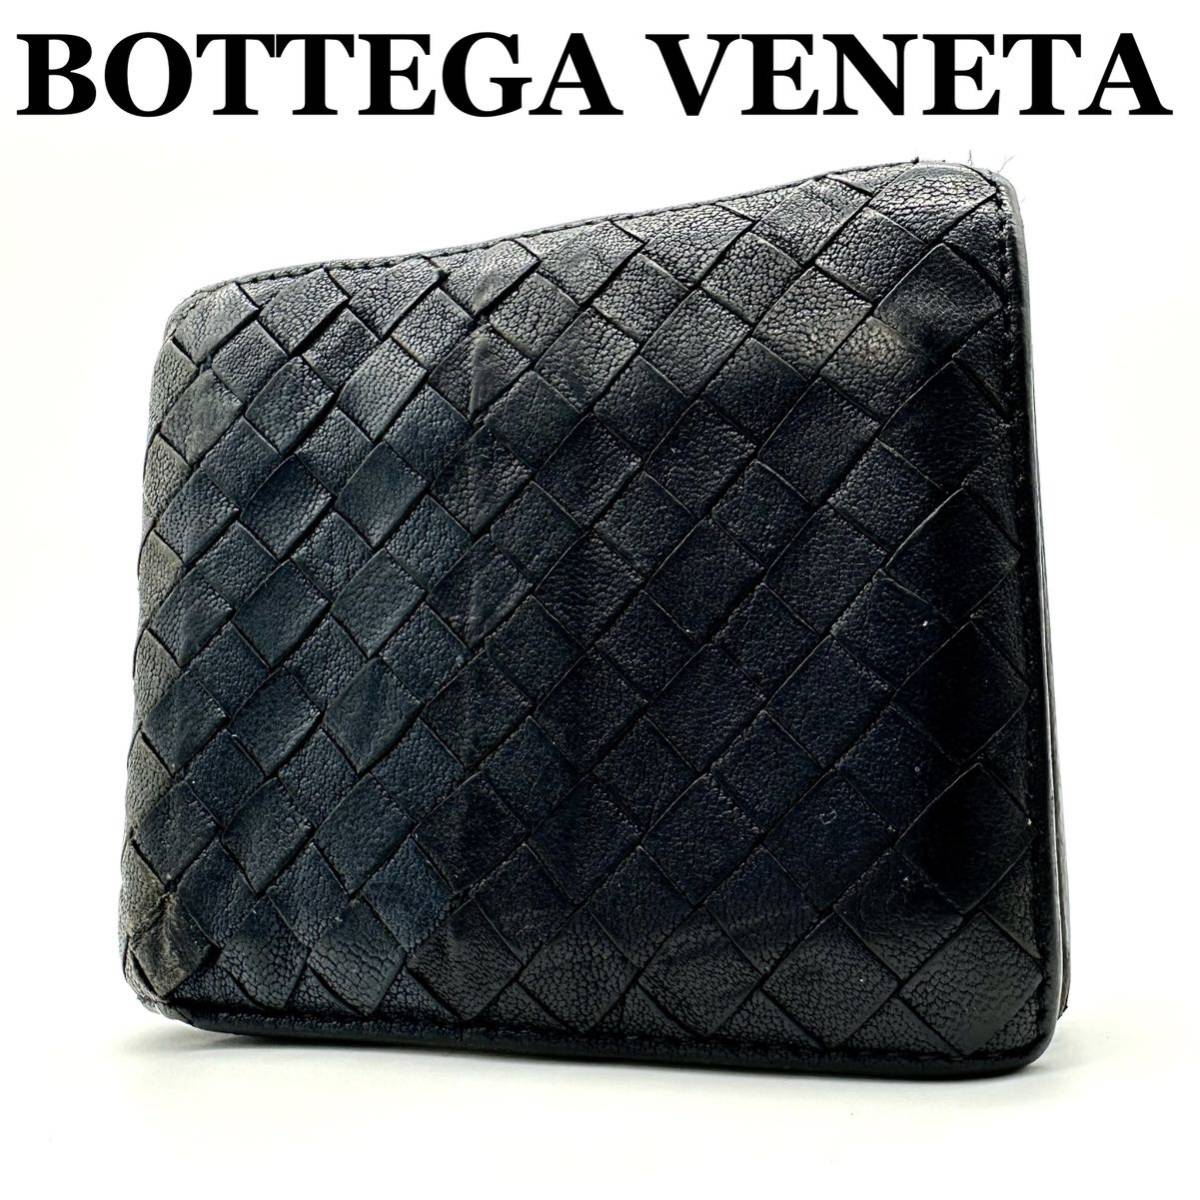 【美品】ボッテガヴェネタ BOTTEGA VENETA イントレチャート 編み込み 切り替え 財布 二つ折り財布 マルチカラー ブラック ネイビー レザー